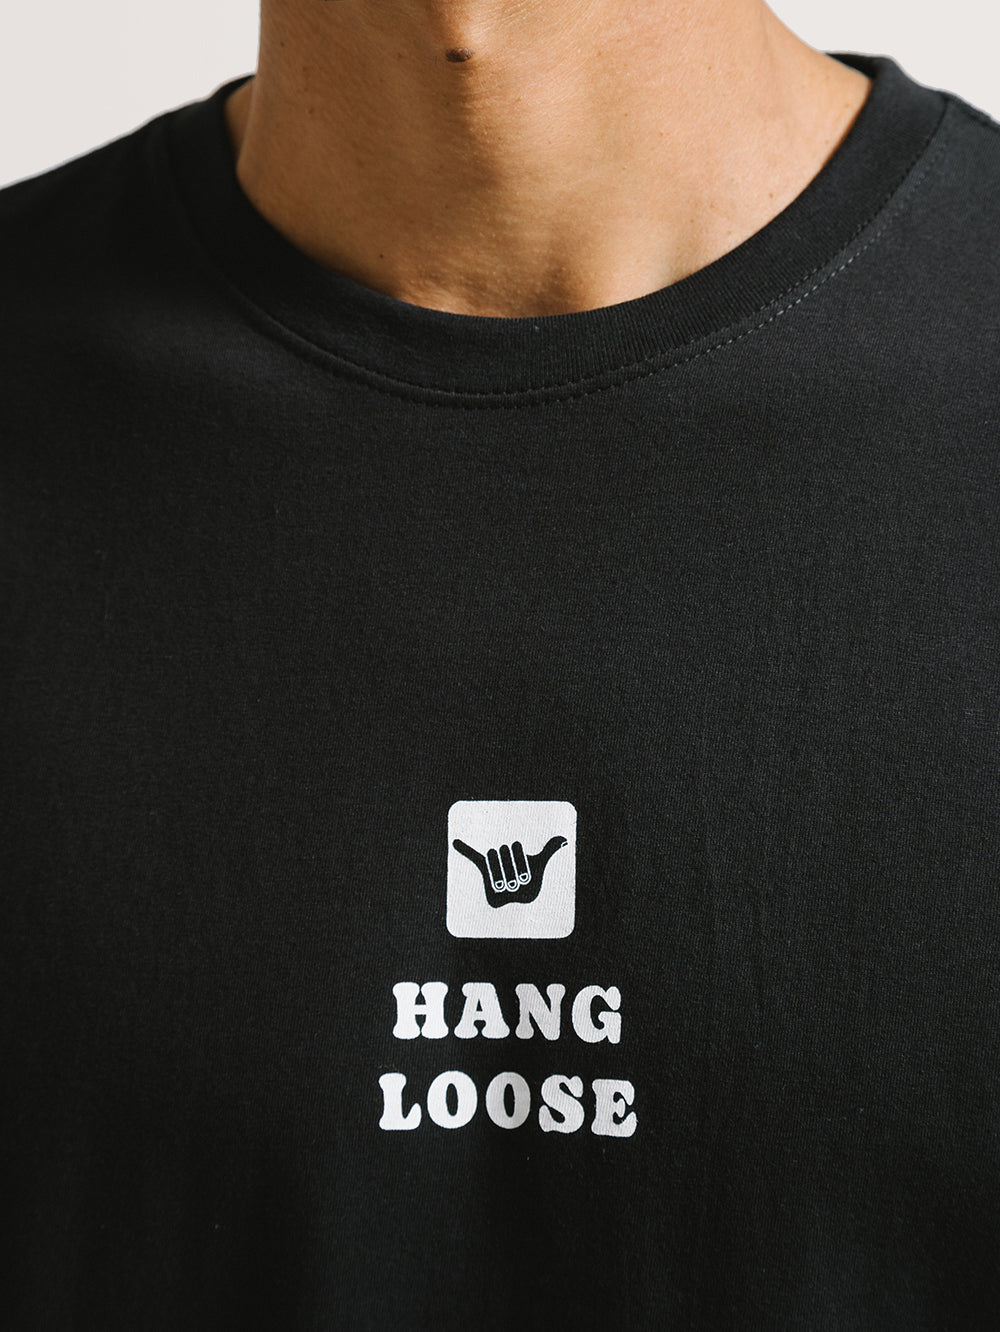 Camiseta Hang Loose Midlog Preta